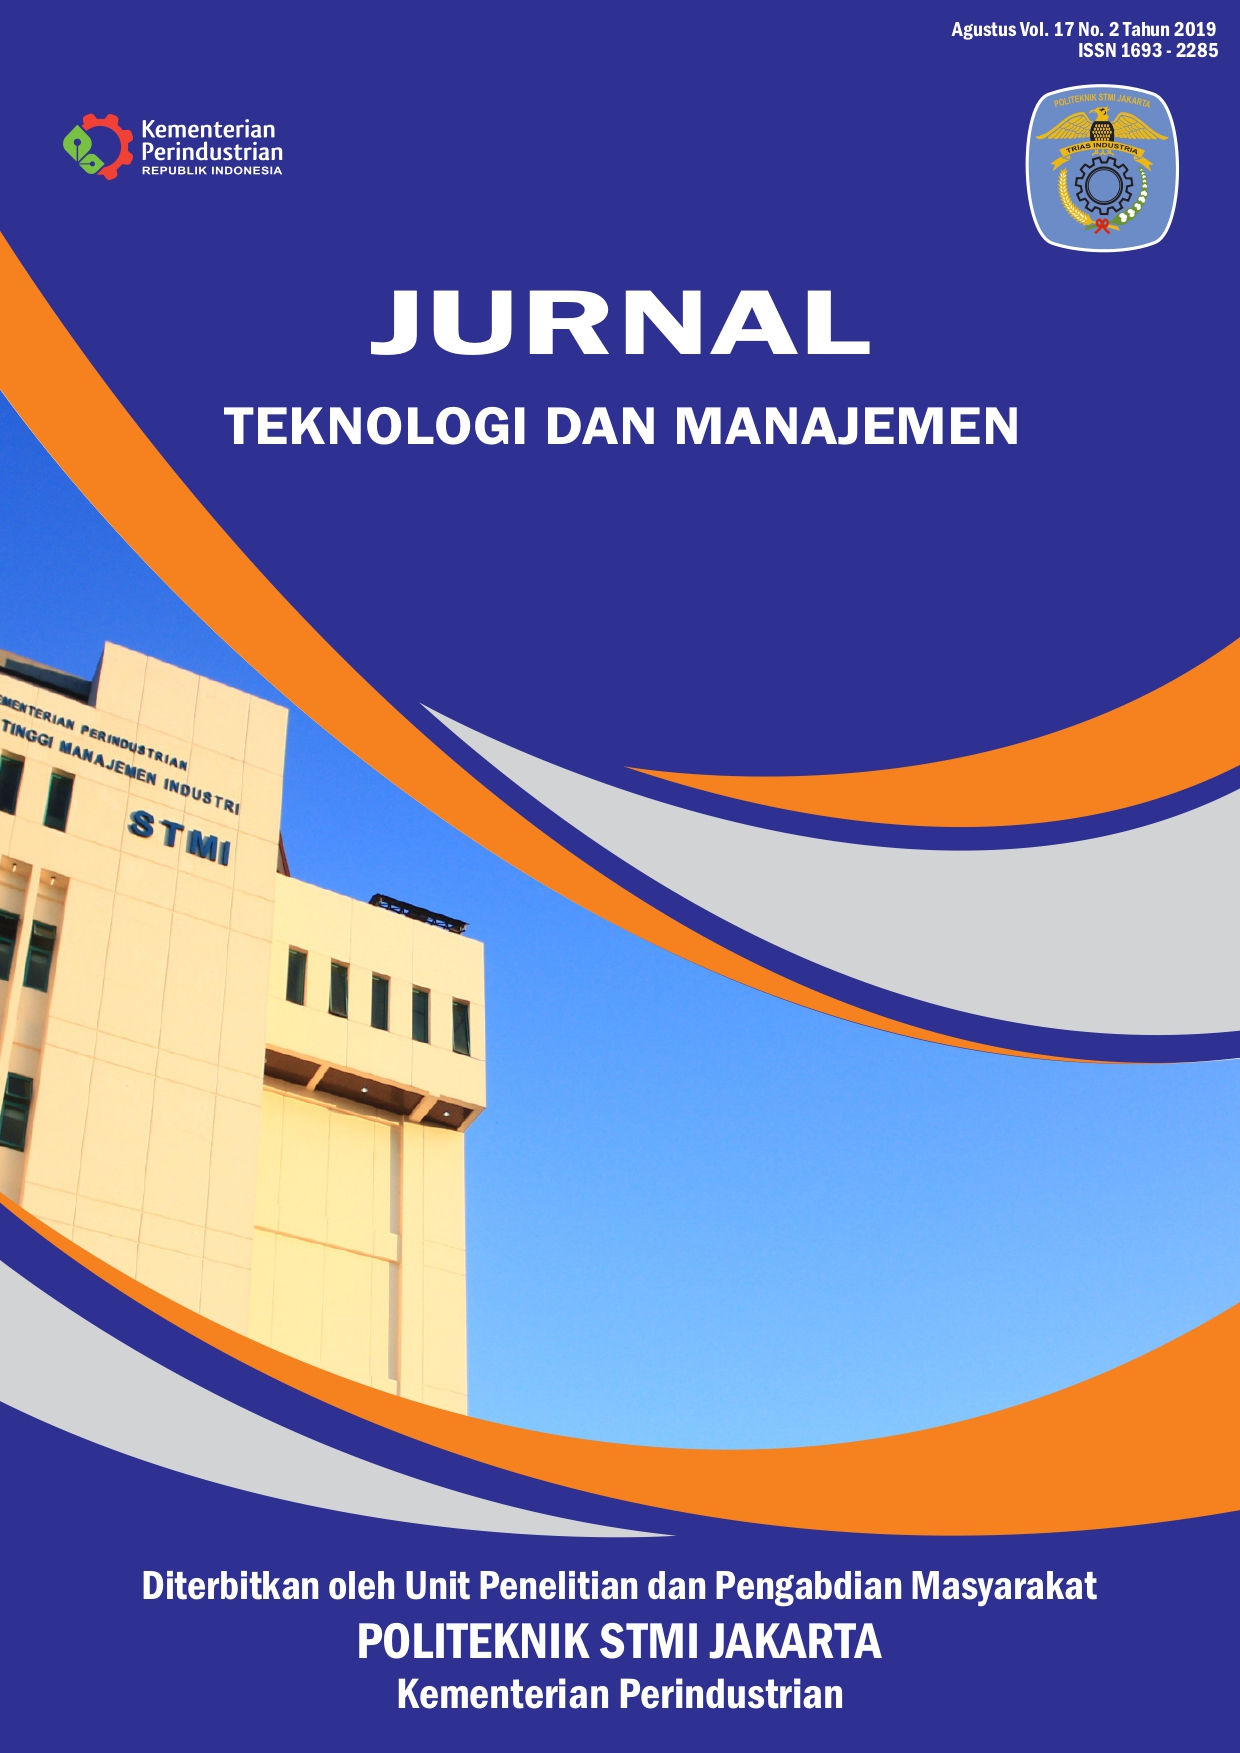 Jurnal Teknologi dan Manajemen Volume 17 No 2 Agustus 2019